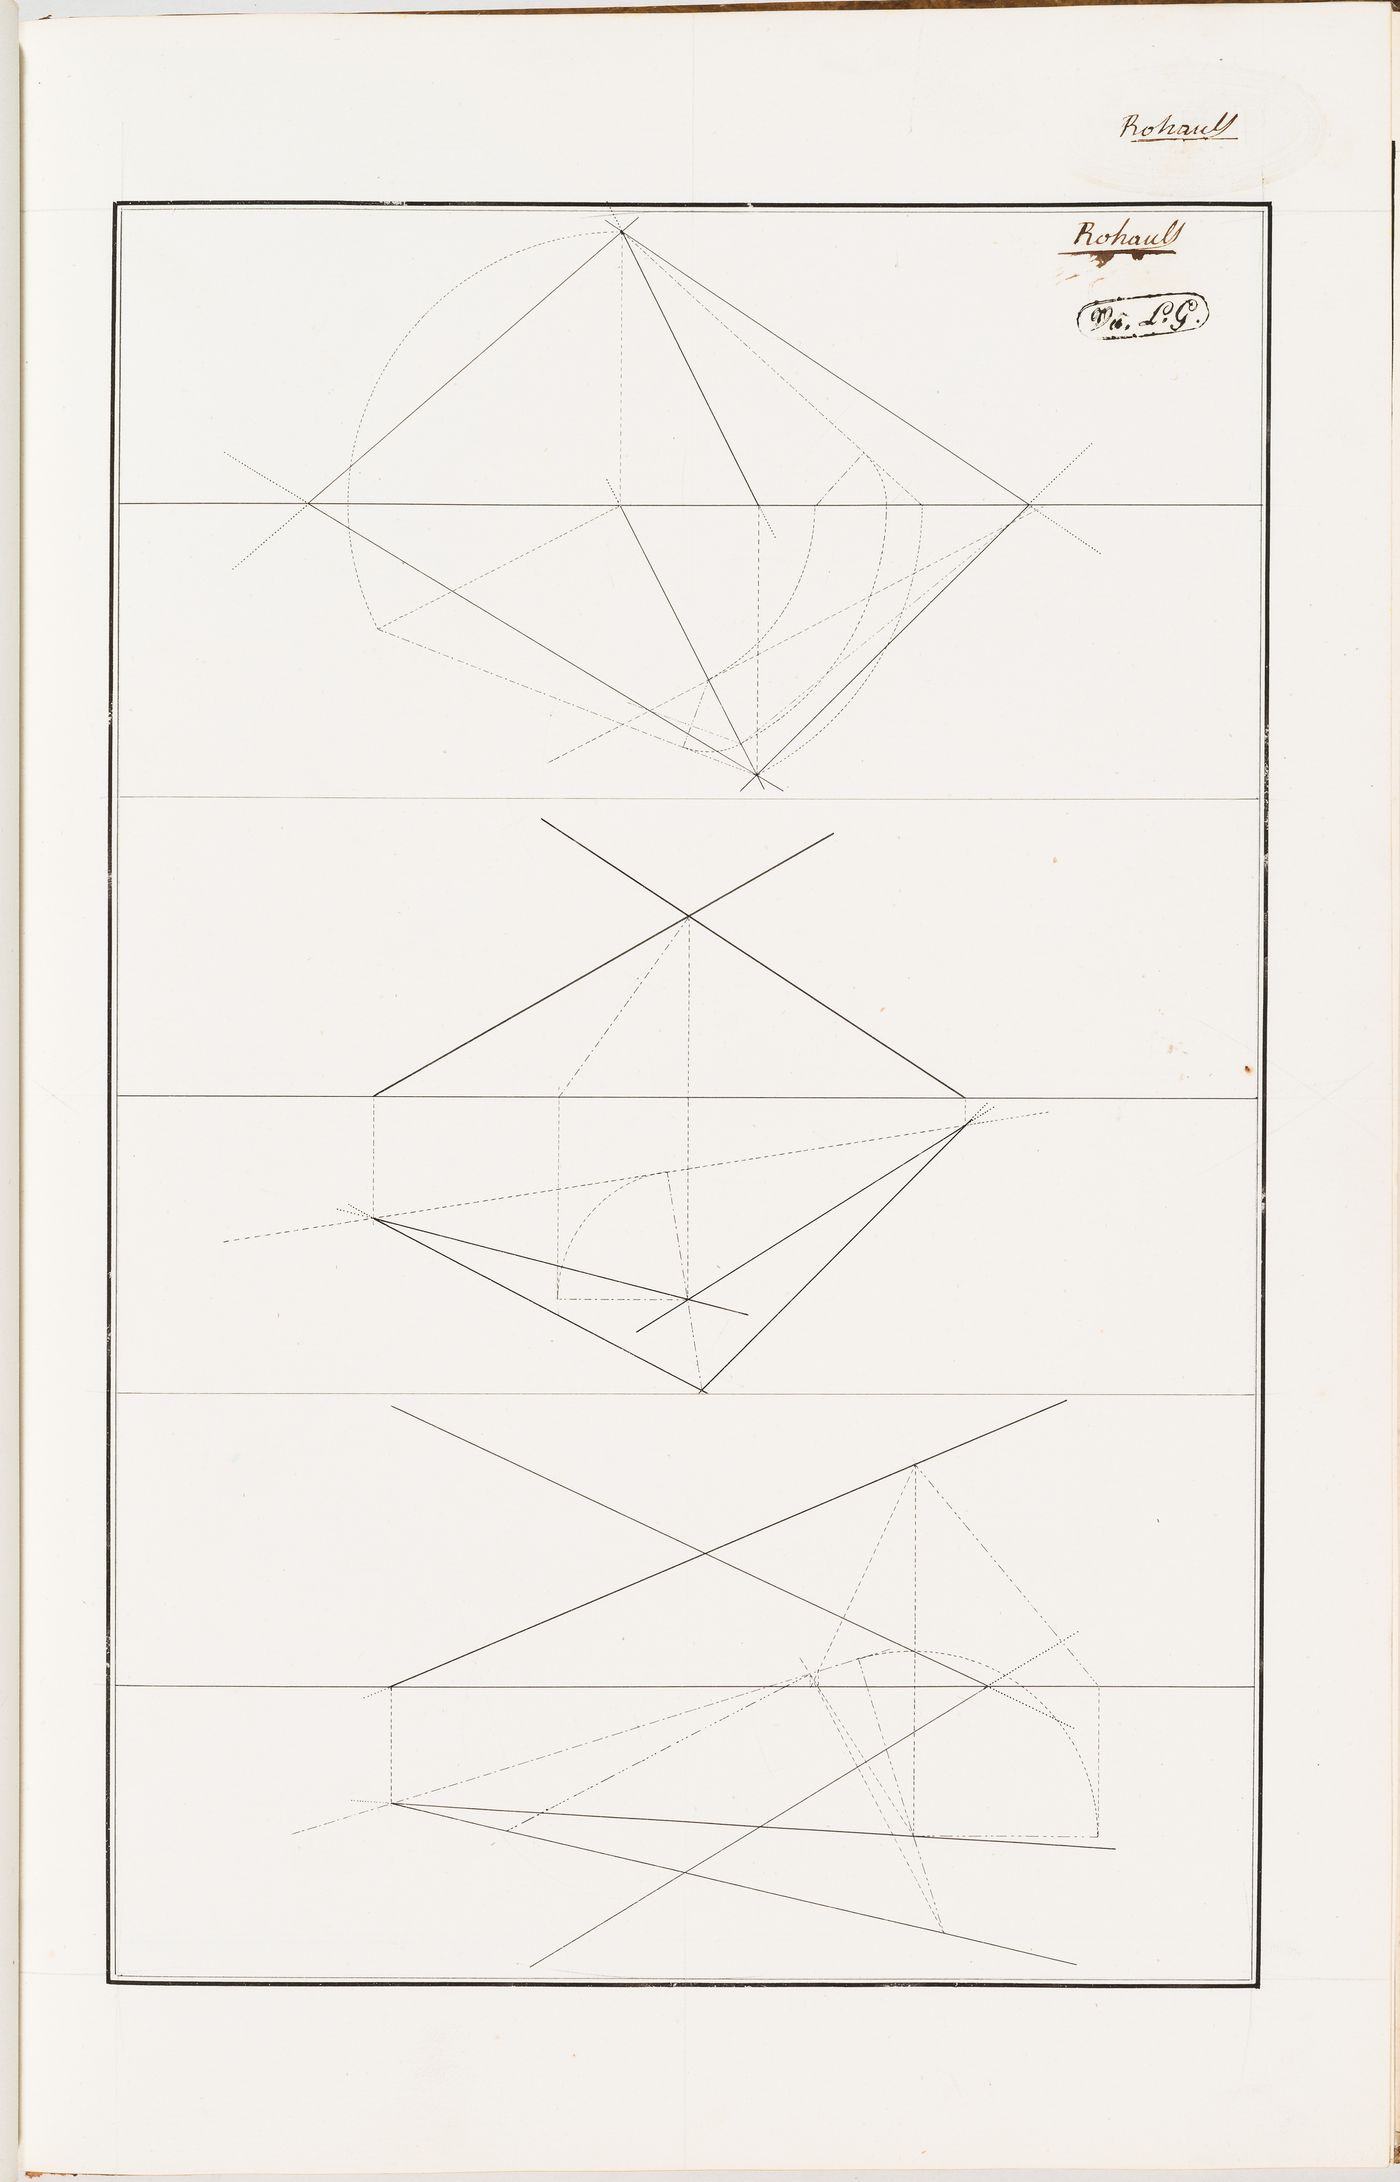 Three geometry exercises